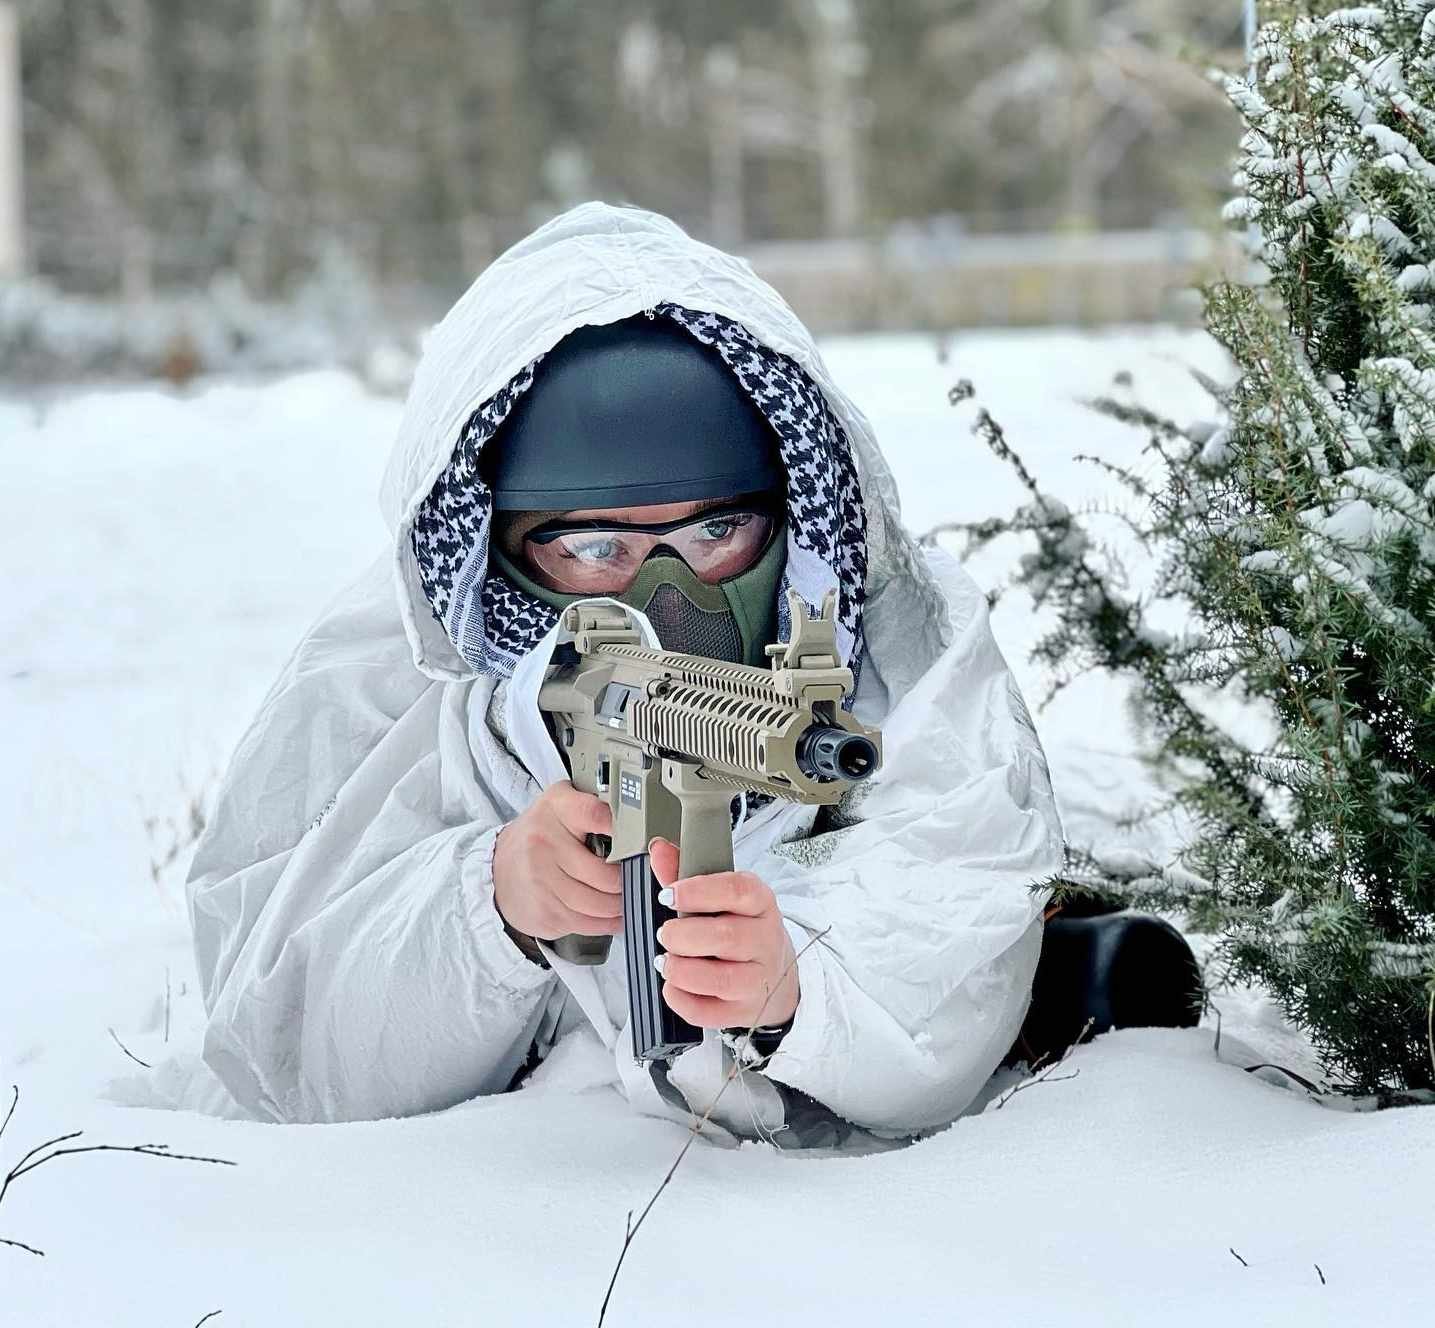 Ex-miss Ucrânia posa com armas e incentiva resistência civil. Em floresta de gelo, ela aponta fuzil para frente com roupas militares - Metrópoles